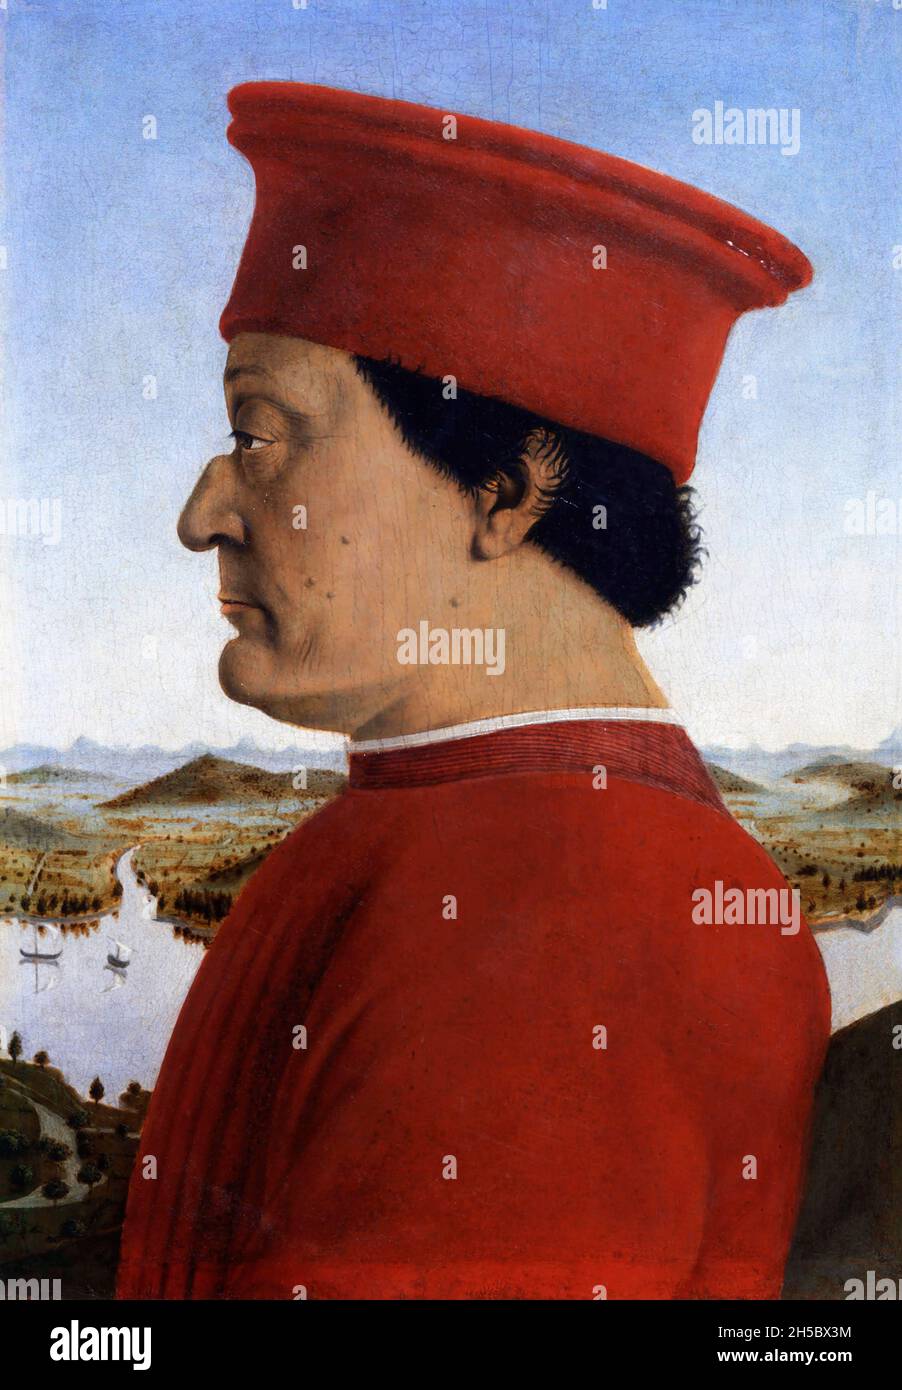 Portrait du duc d'Urbino, Federico da Montefeltro par Agnolo Bronzino (1503-1572), tempera sur panneau, 1467-72.Cette peinture fait partie d'un diptyque - l'autre moitié montrant sa femme. Banque D'Images